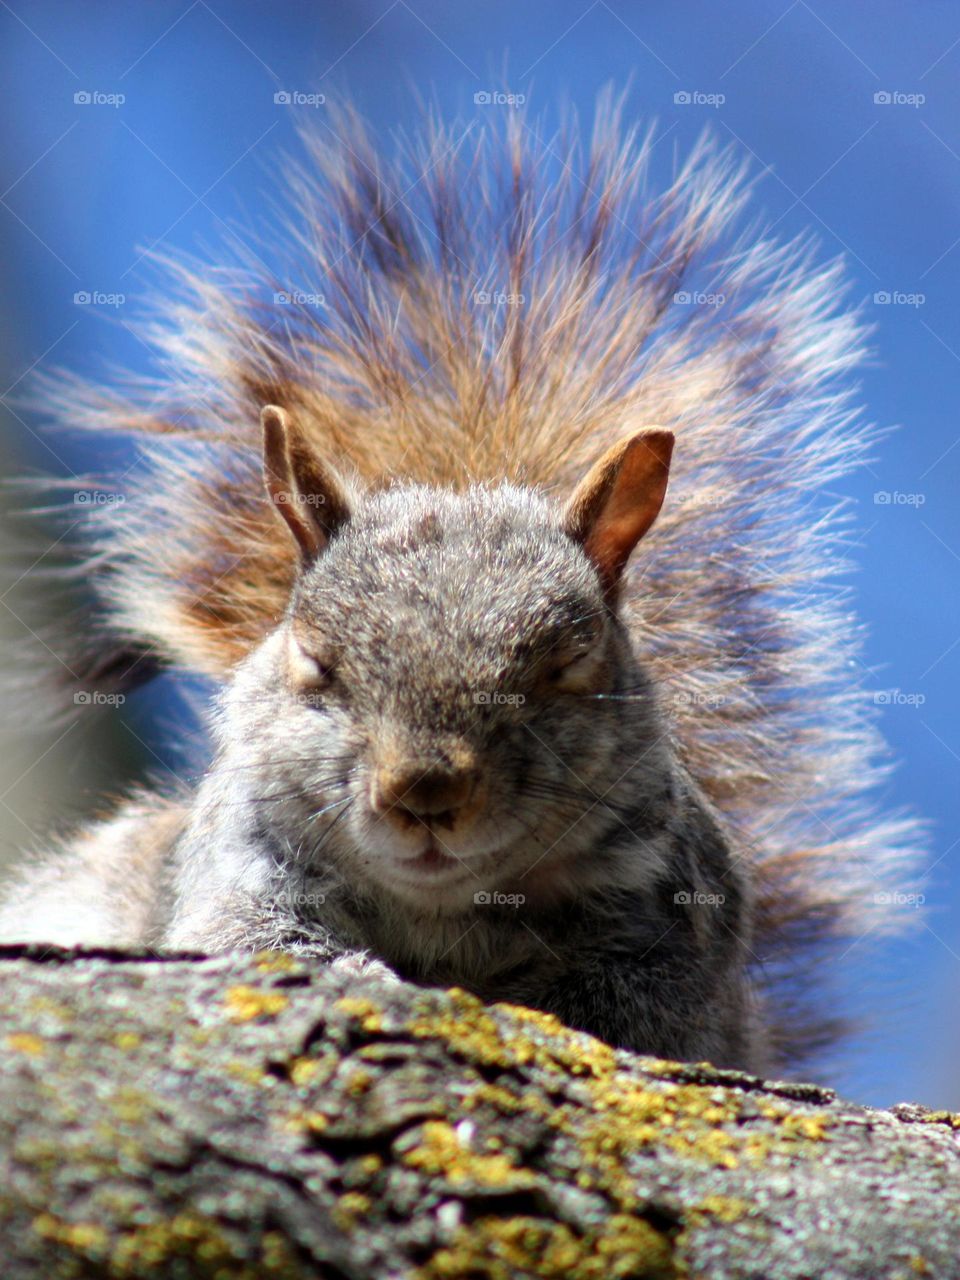 Pensive squirrel